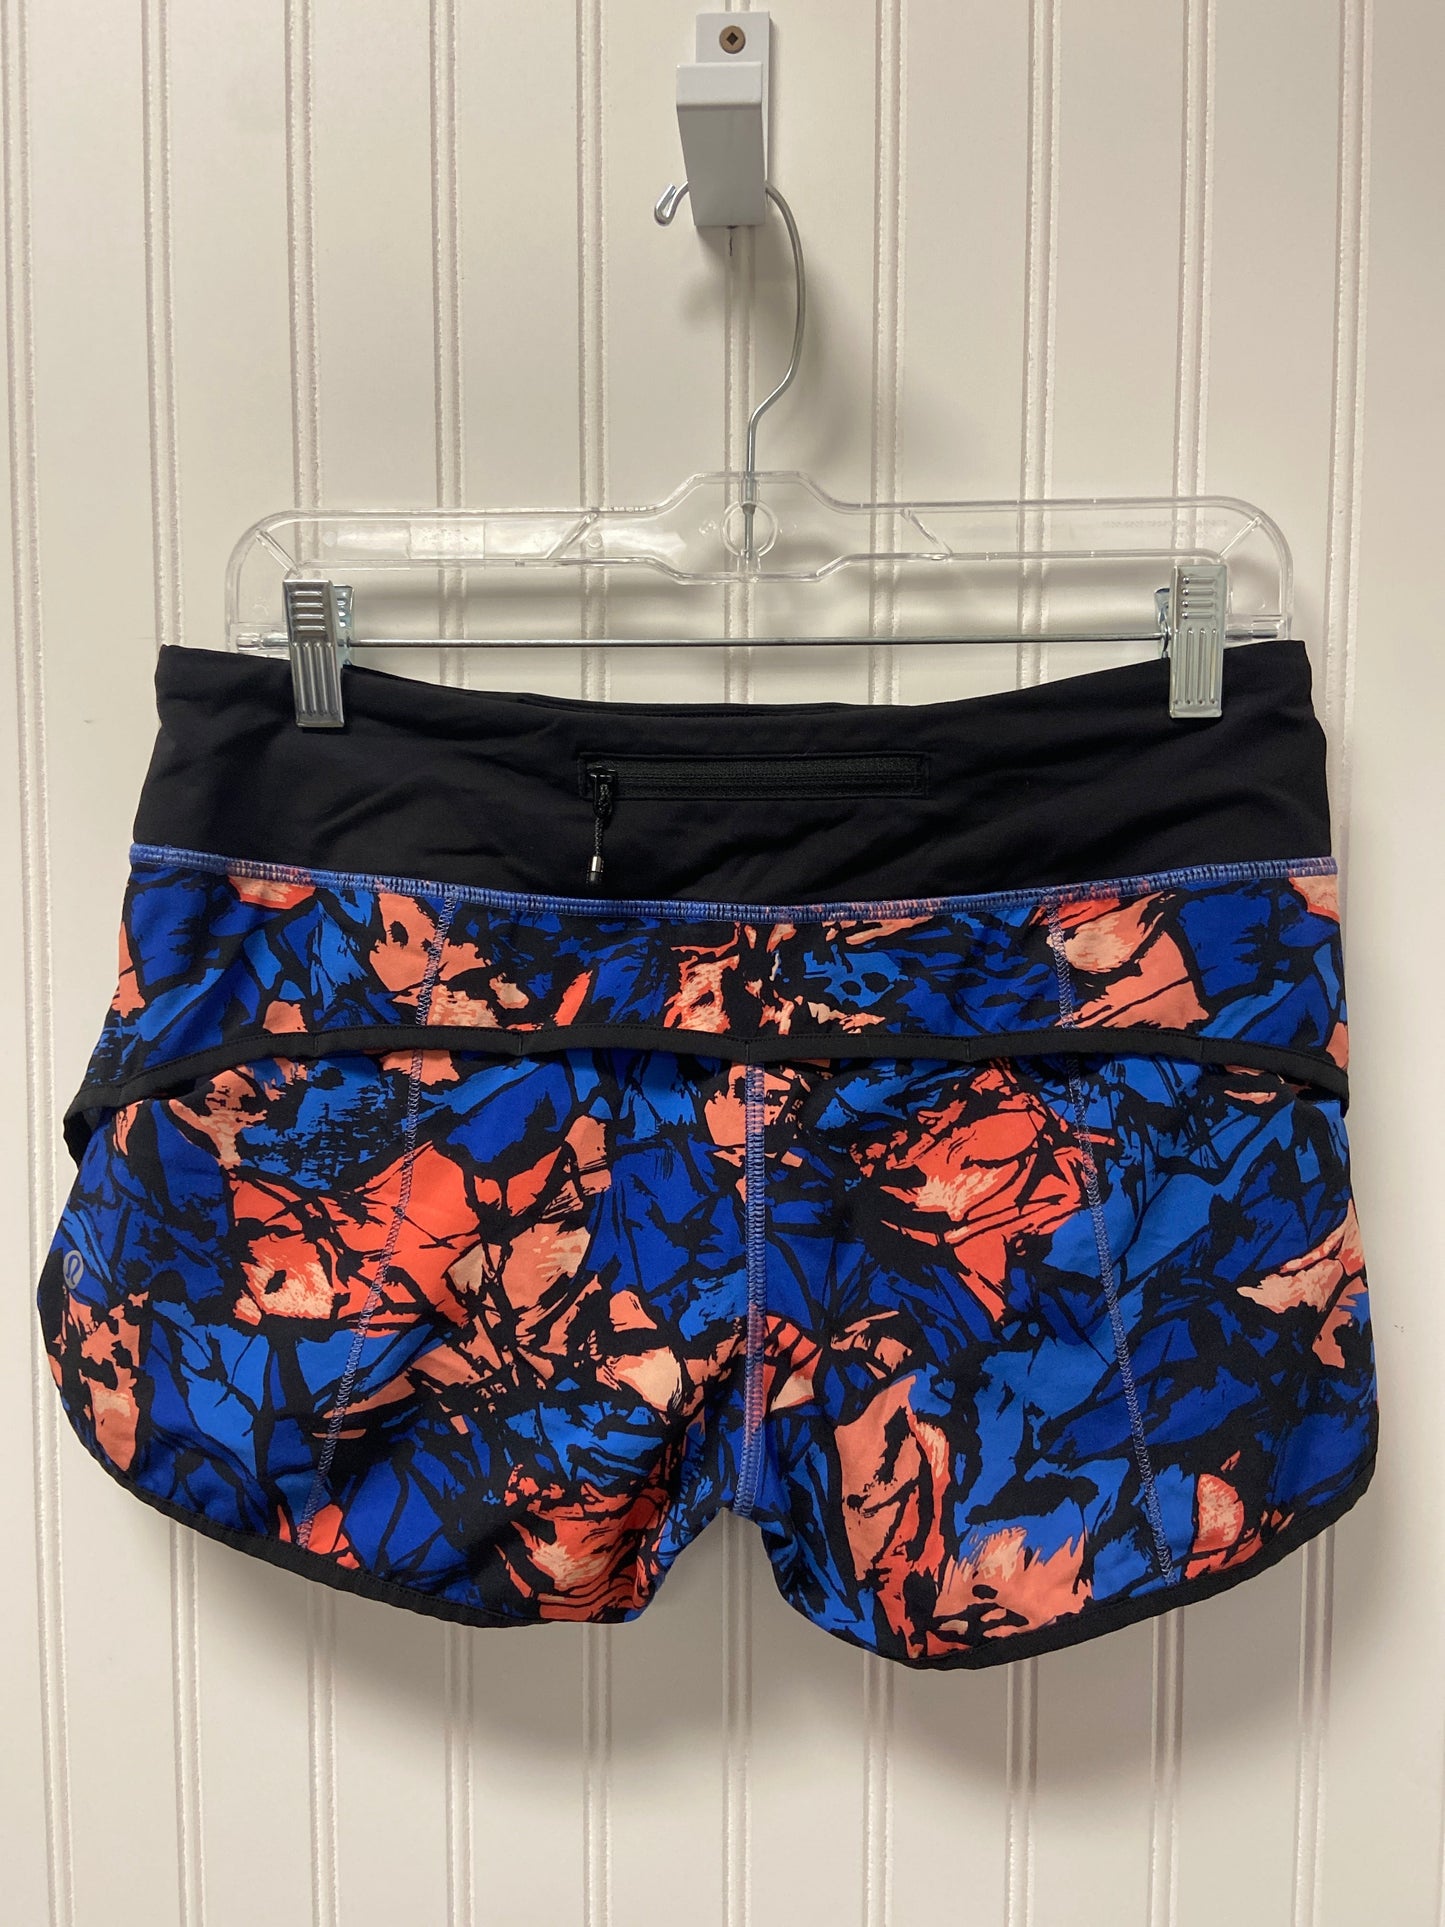 Blue & Orange Athletic Shorts Lululemon, Size S